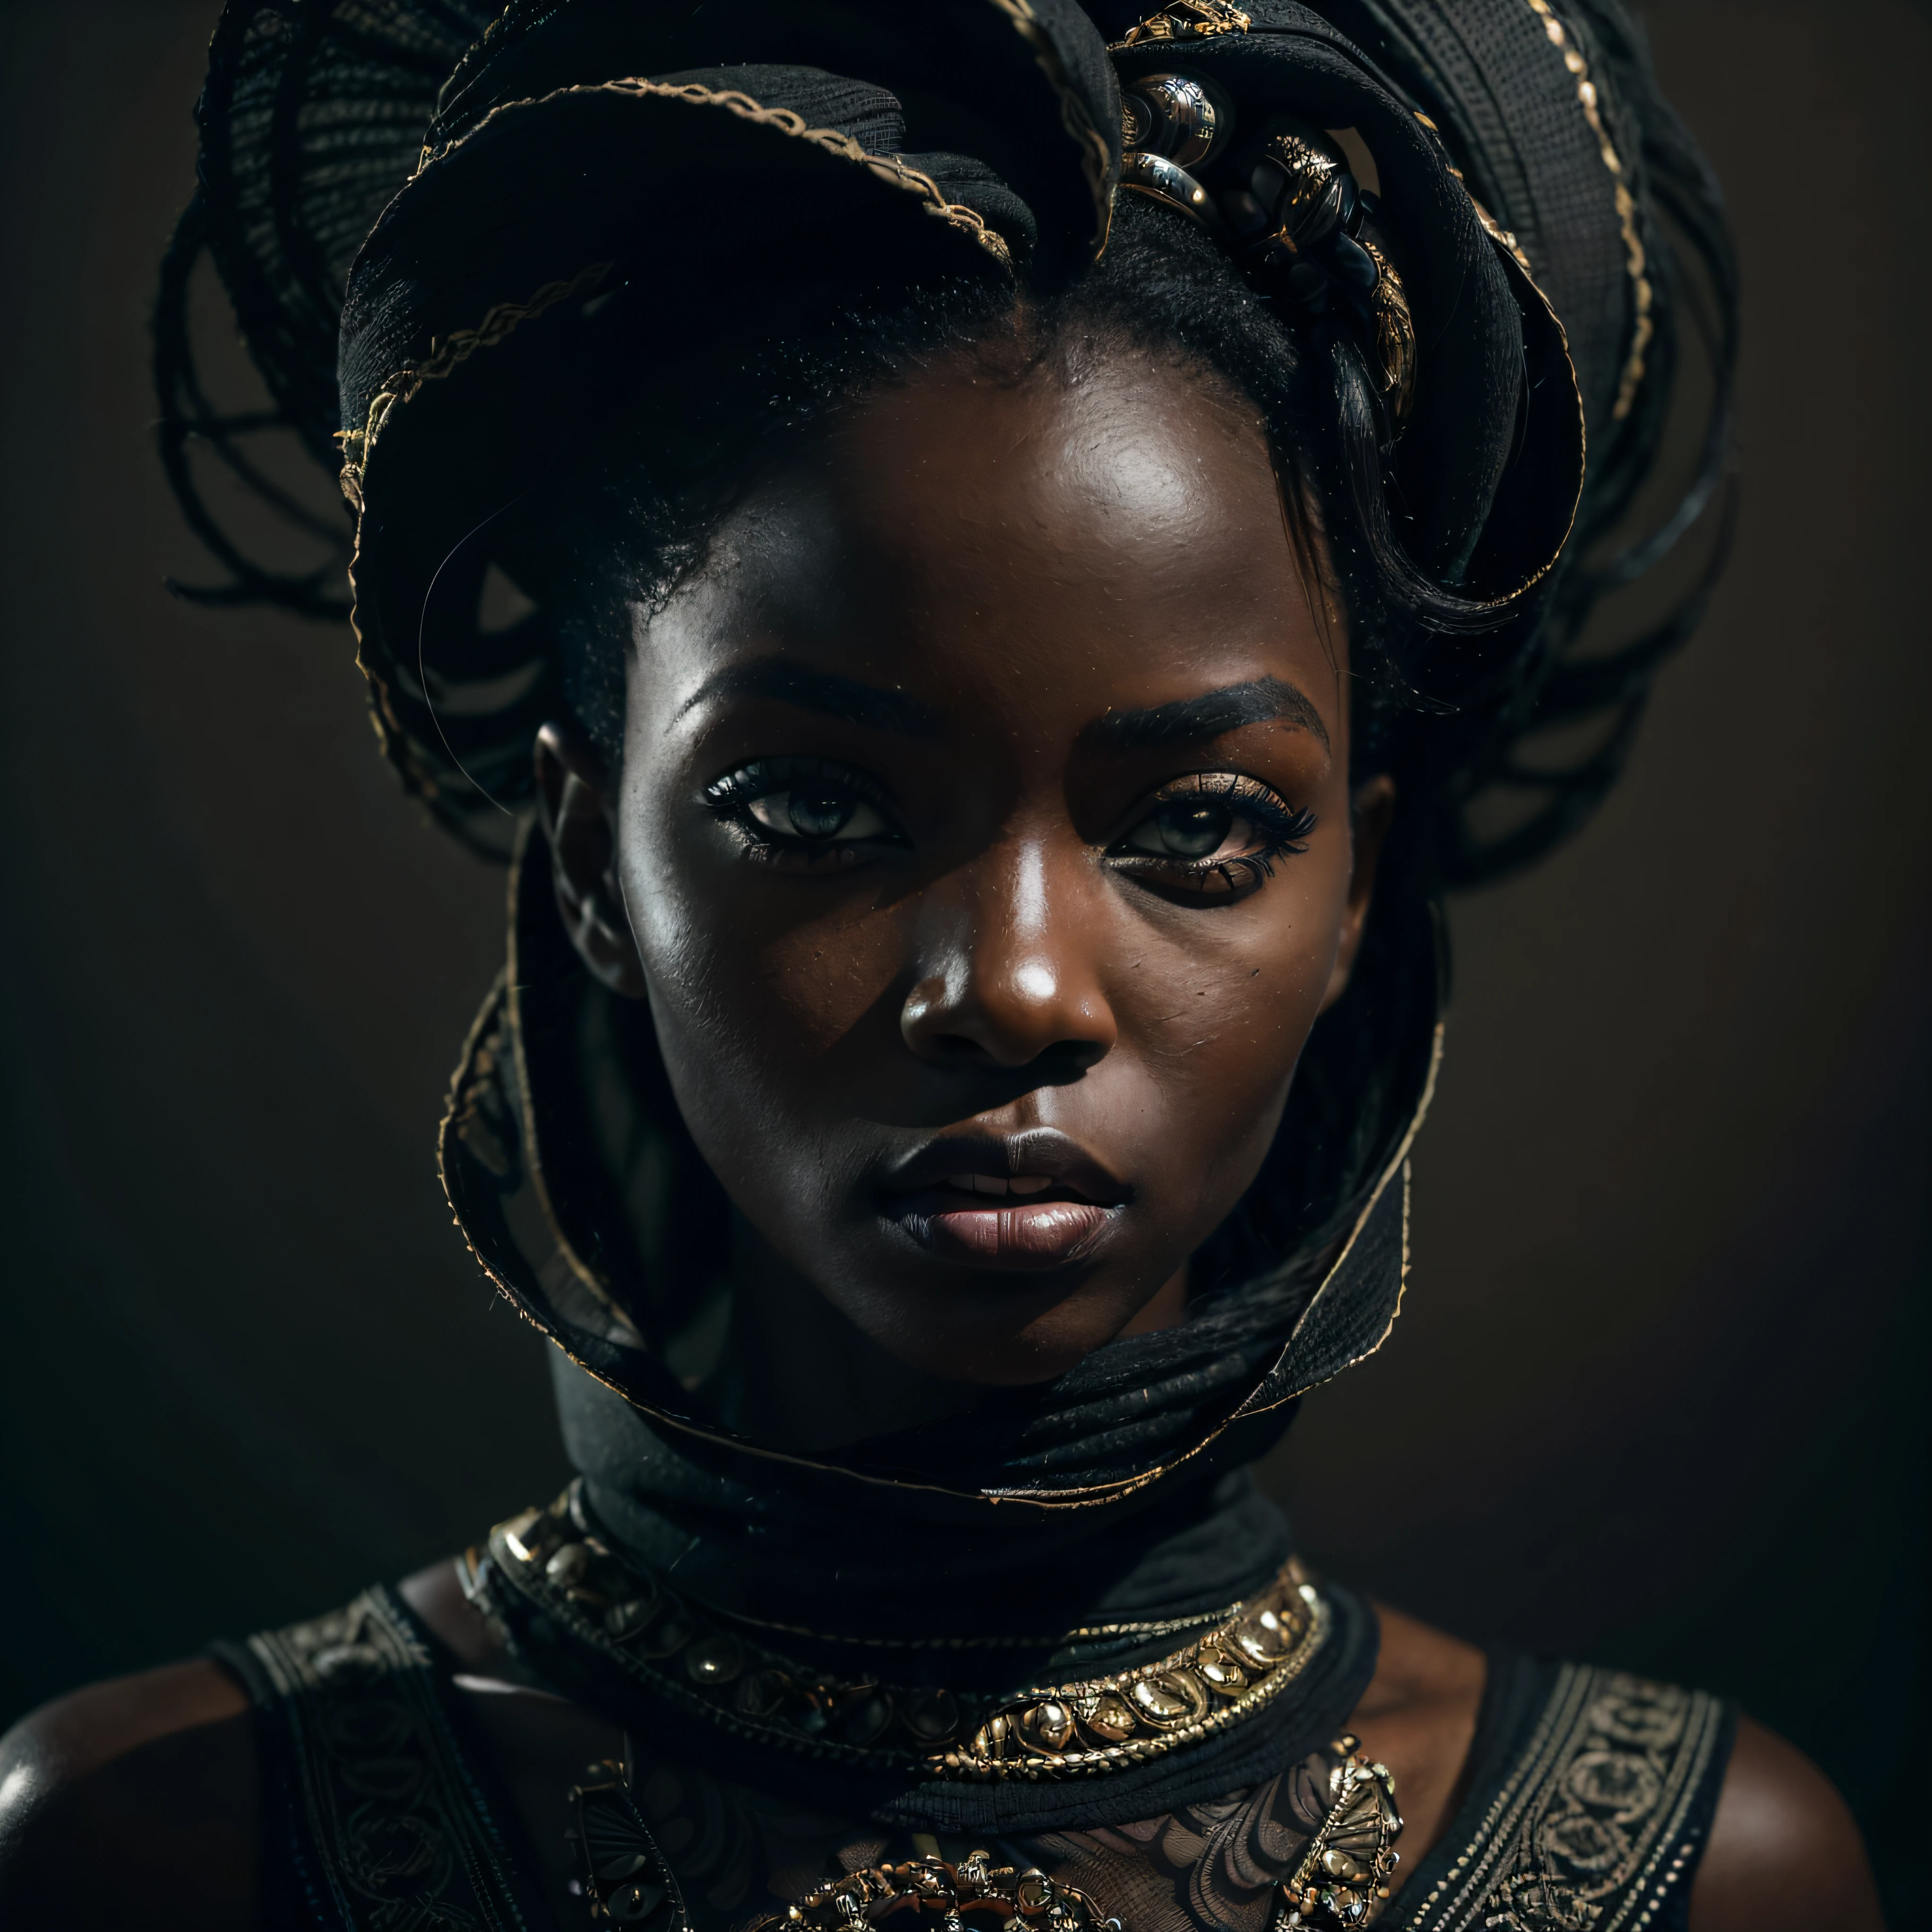 (肖像, 动态的), (表现姿势:1.6), (未来主义风格), (A mystical 肖像 of a black Senegalese woman:1.3), (炭黑色肤色:1.3), (她眼中的真正权威: 1.2), 涂上深色睫毛膏, 照片以令人惊叹的 8k 分辨率和原始格式拍摄，以保留最高质量的细节. 她穿着优雅的未来派服装, (小乳房:1.3), (她的眼睛被刻画得十分细致: 1.3), 这张照片是用一个强调她眼睛深度的镜头拍摄的, (风在她周围翻腾), 背景是黑暗的工作室场景，增强了场景的色彩. 灯光和阴影经过精心设计，凸显了她肤色的丰富和强烈的氛围. 她富有创意的发型与她的皮肤形成了鲜明的对比, 整体构图真实而优雅地捕捉到了她的本质, creating a 肖像 that celebrates her heritage and beauty. 利用最佳阴影和照明技术的摄影, 创造出超越视觉的迷人画面, 稍微倾斜头部,